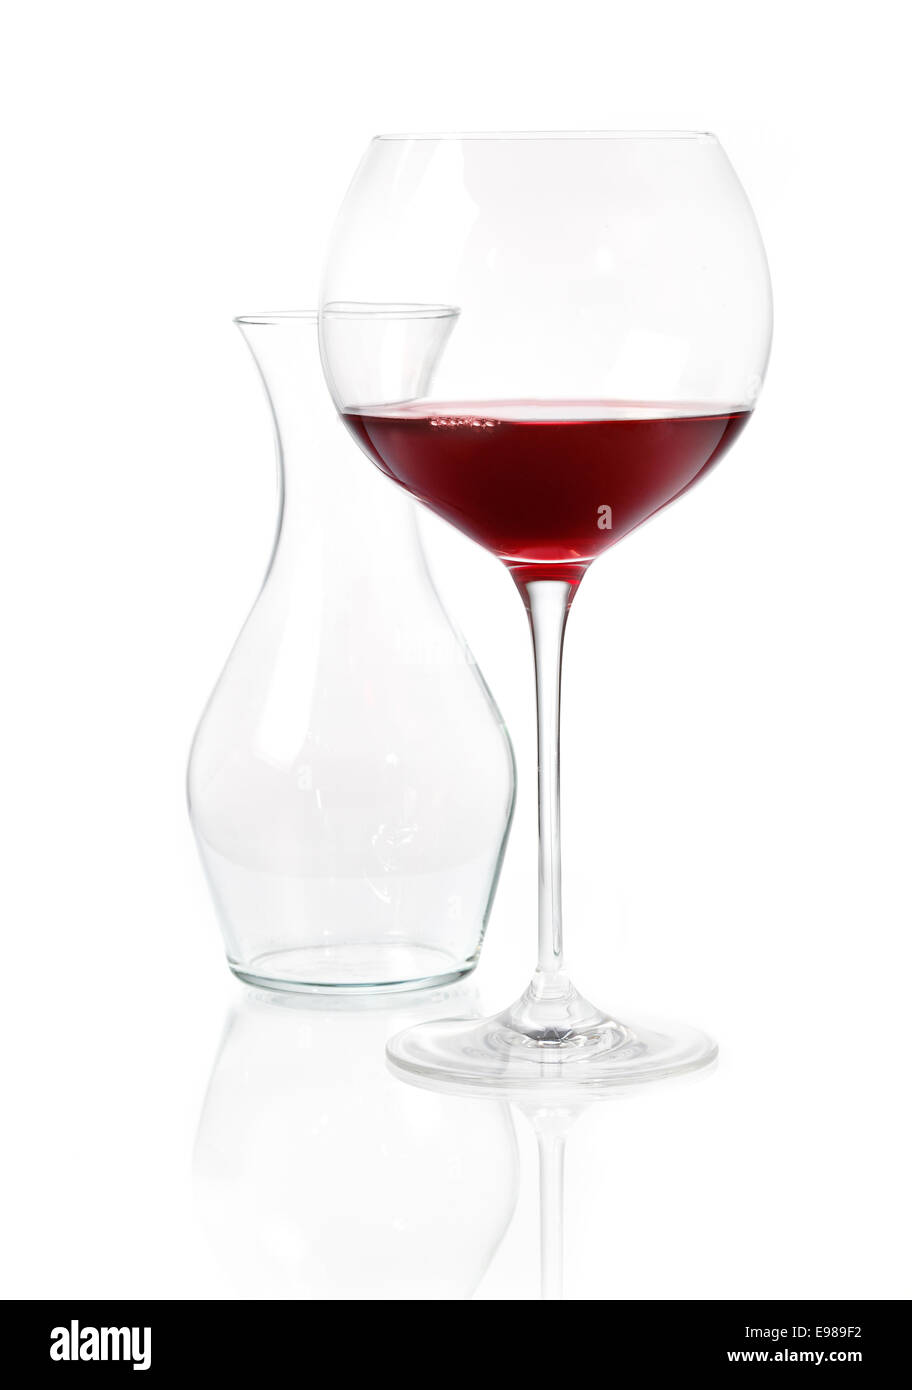 Bicchiere di vino rosso con un bicchiere vuoto carafeon una superficie bianca riflettente Foto Stock